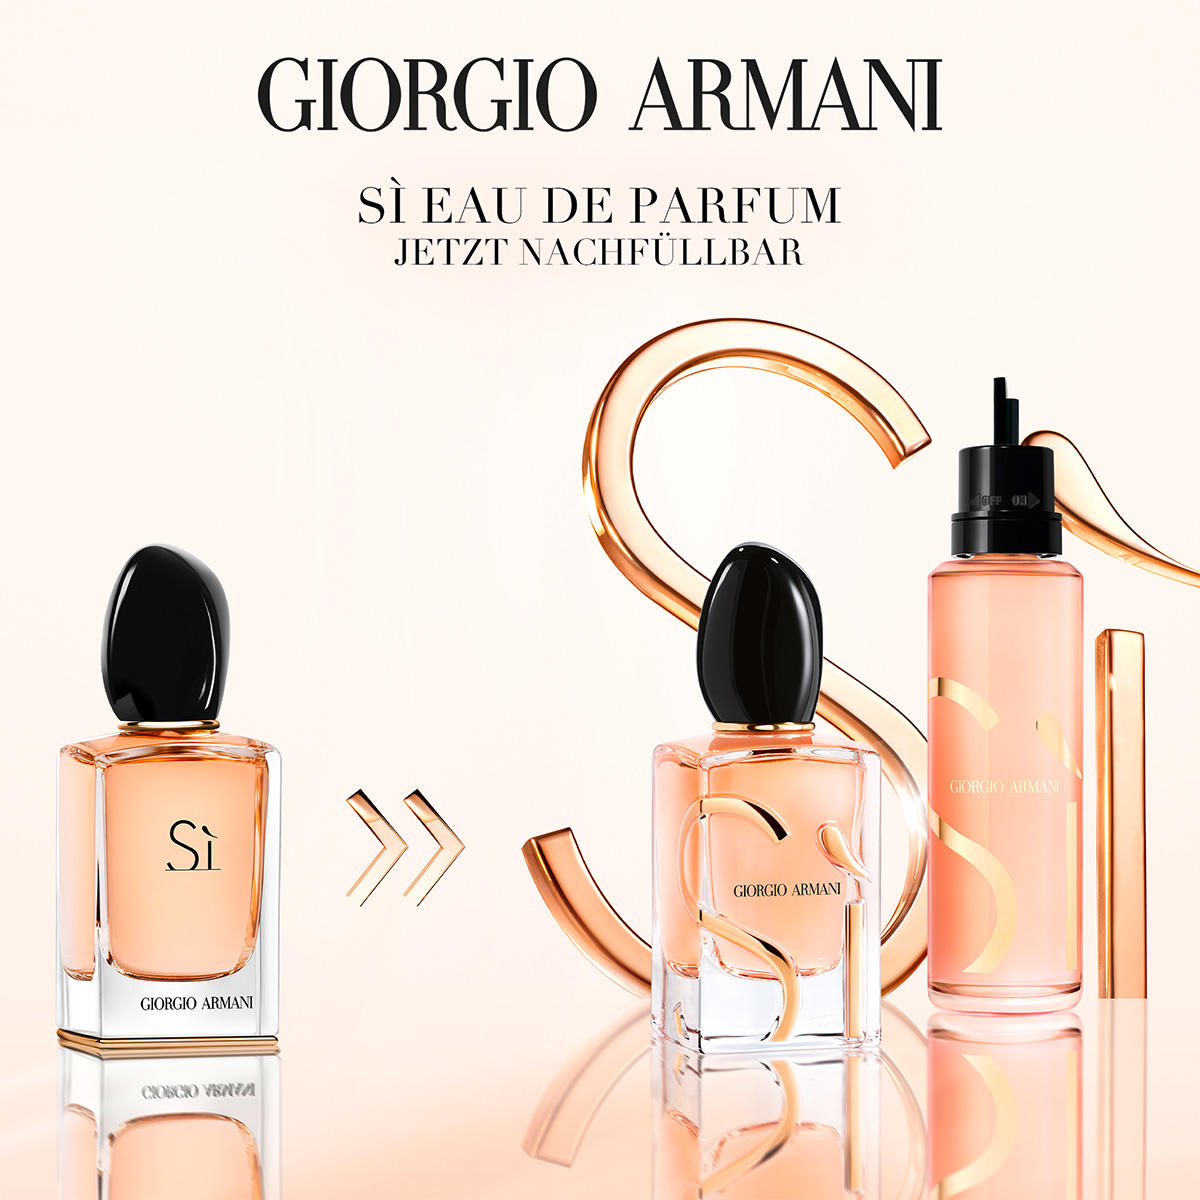 Giorgio Armani Sì Eau de Parfum Refill 100 ml - 5